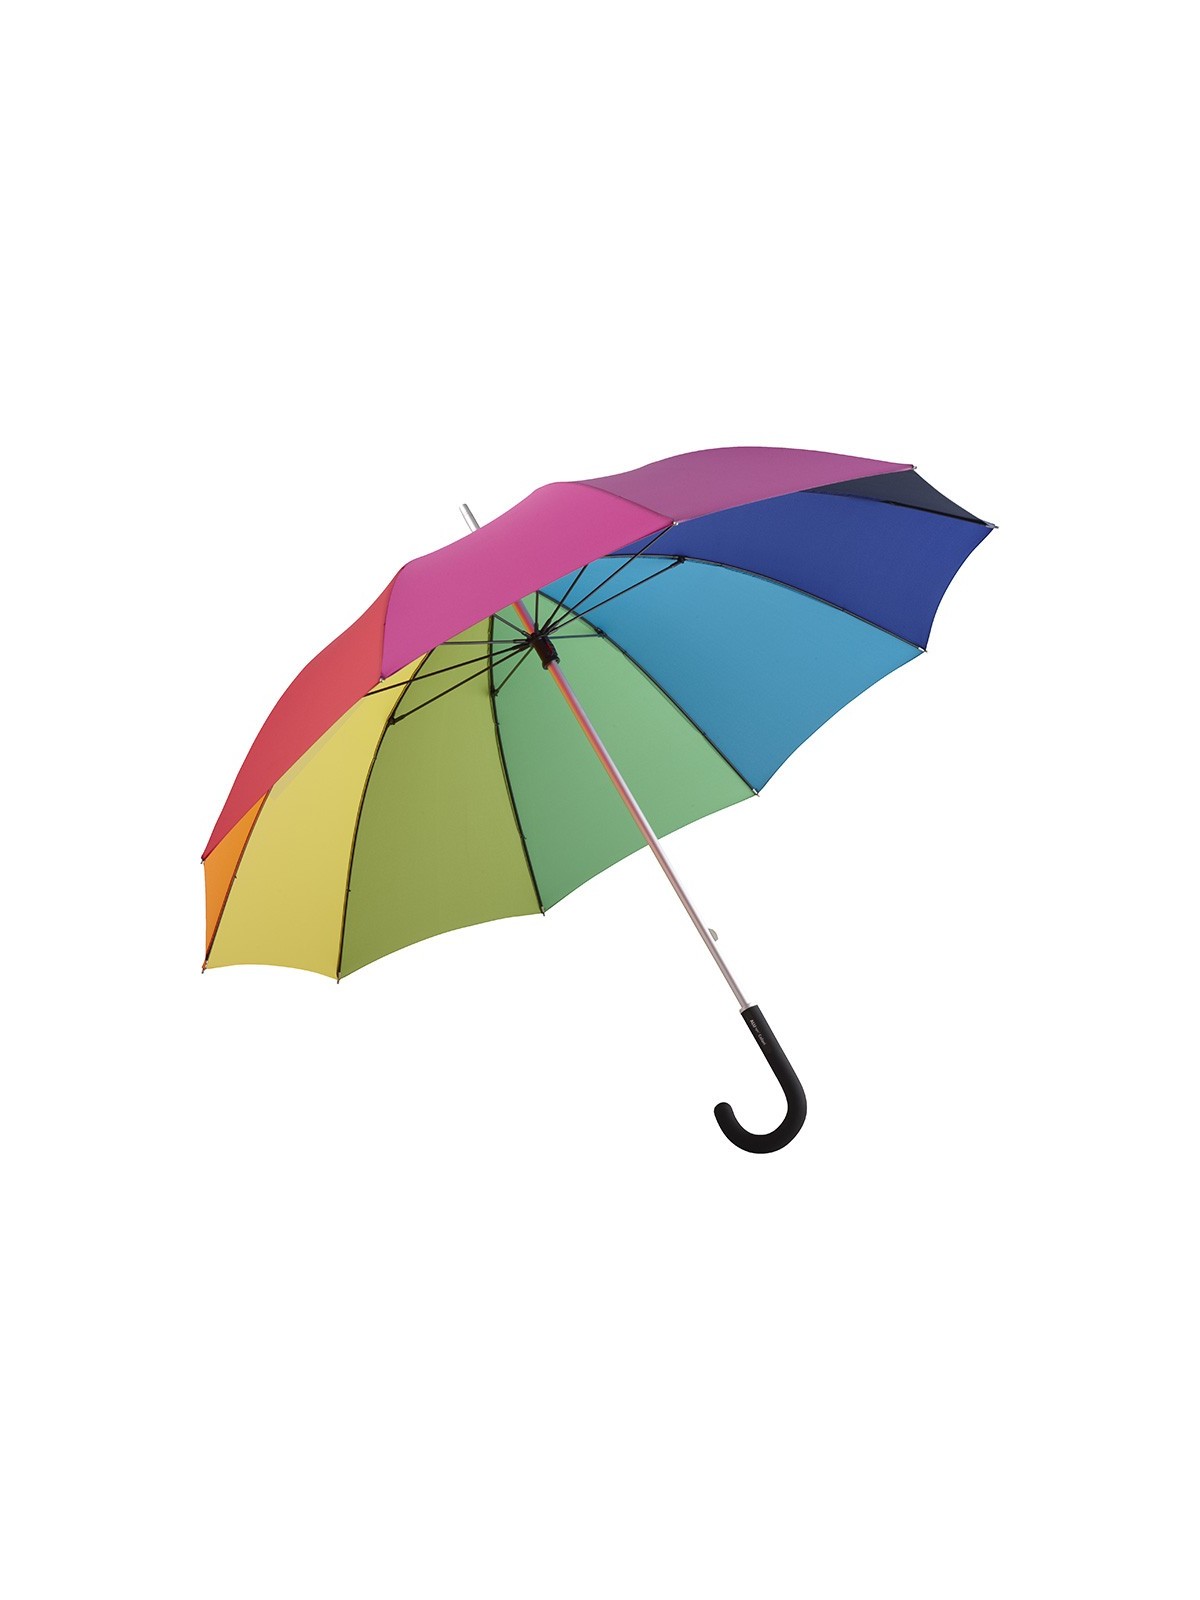 75-031 Parapluie publicitaire arc en ciel personnalisé